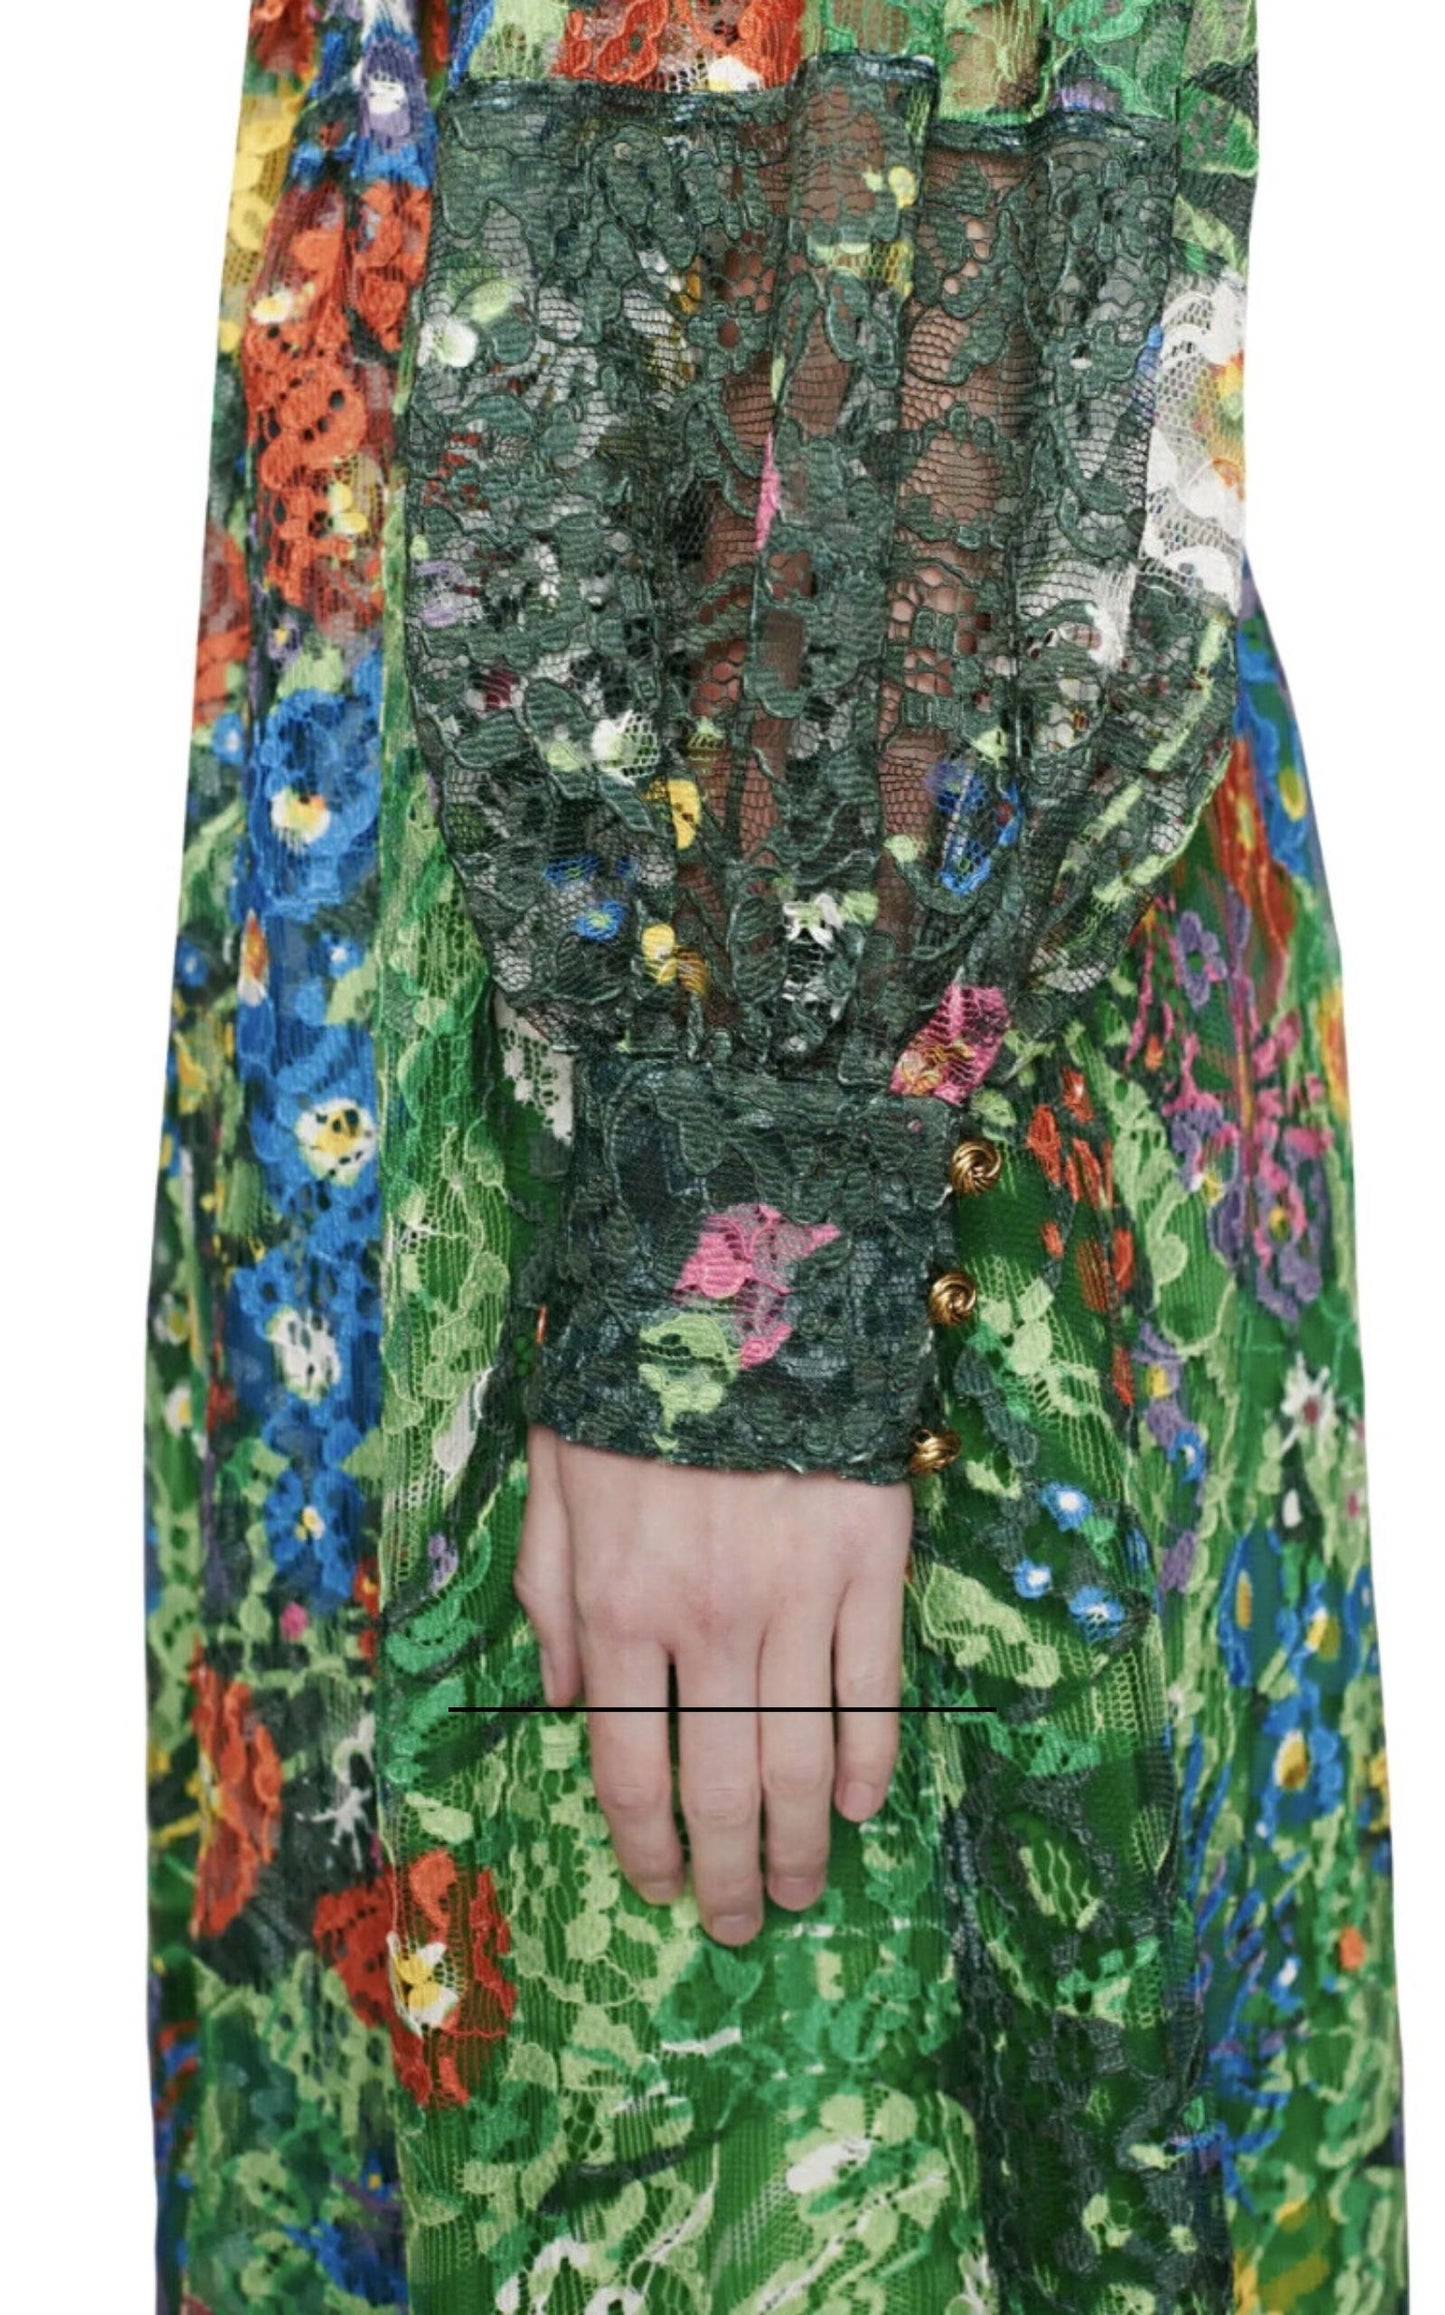  Guccix Ken Scott Floral Print Lace Dress - Runway Catalog